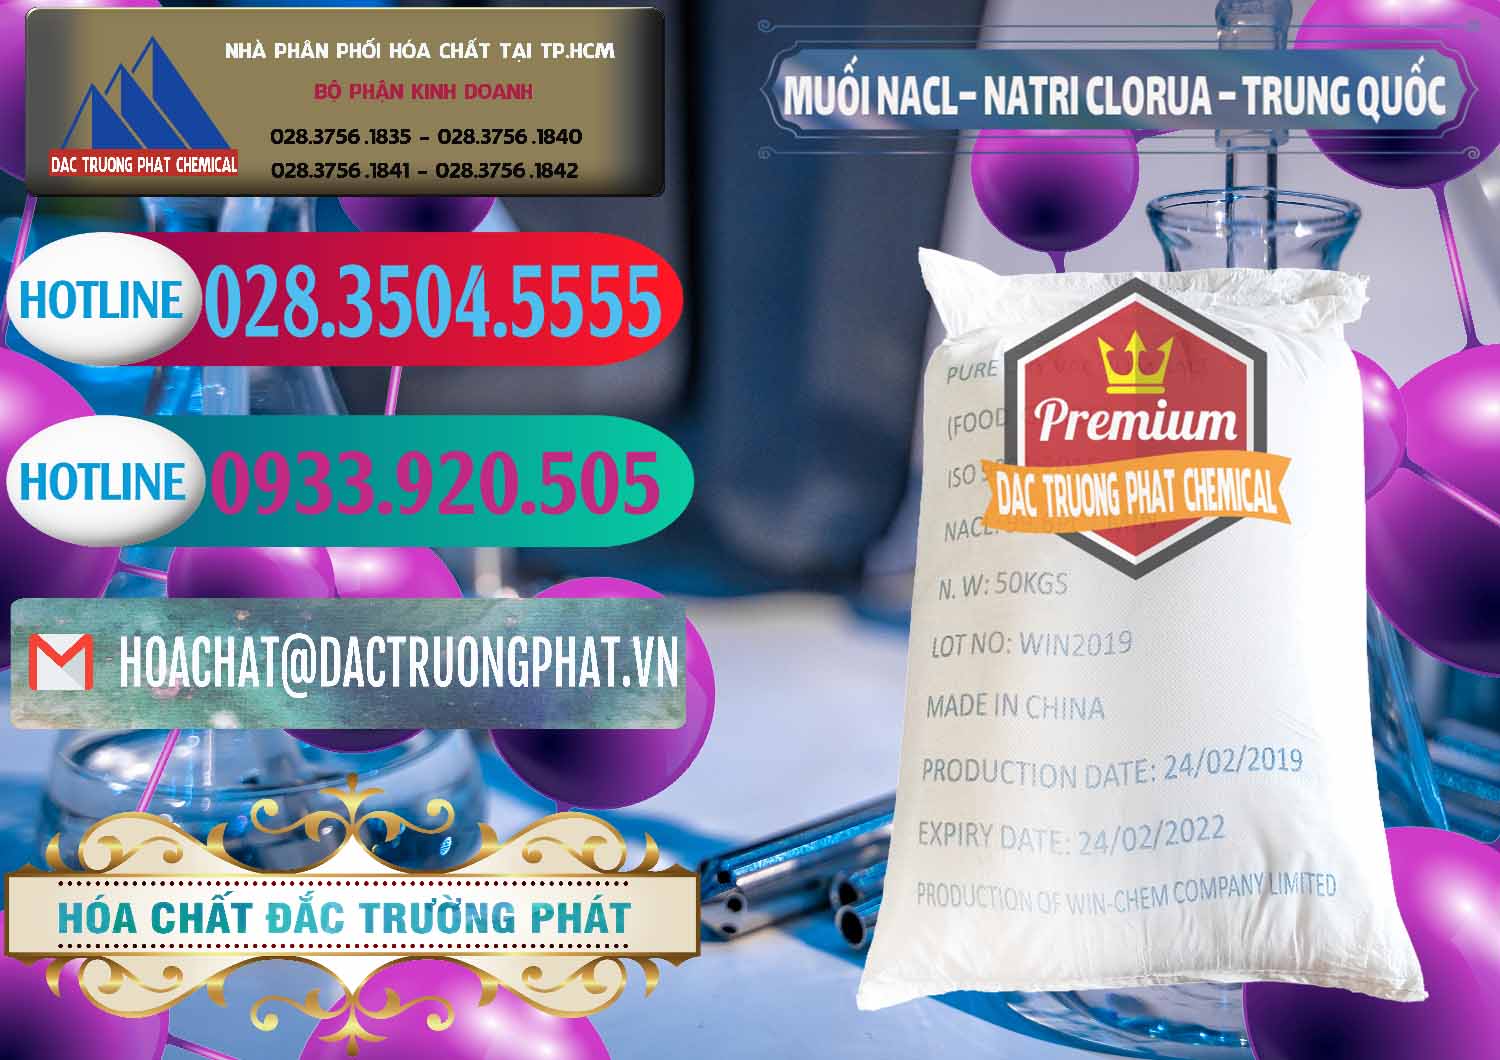 Cty nhập khẩu _ bán Muối NaCL – Sodium Chloride Trung Quốc China - 0097 - Công ty chuyên phân phối & nhập khẩu hóa chất tại TP.HCM - truongphat.vn